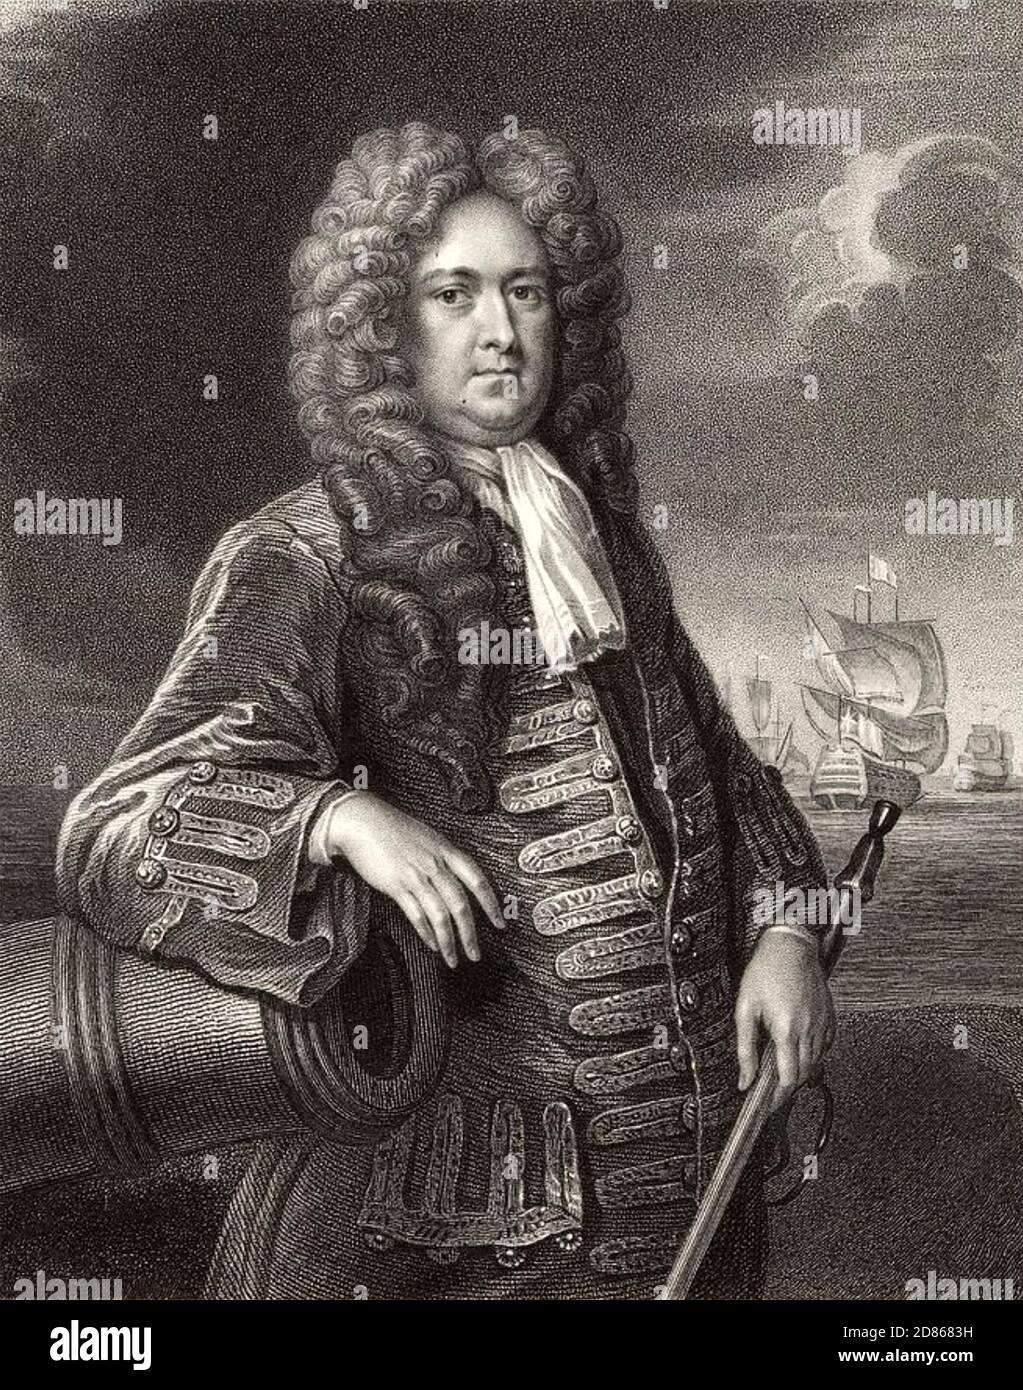 GEORGE ROOKE (1650-1709) englischer Marineoffizier Stockfoto